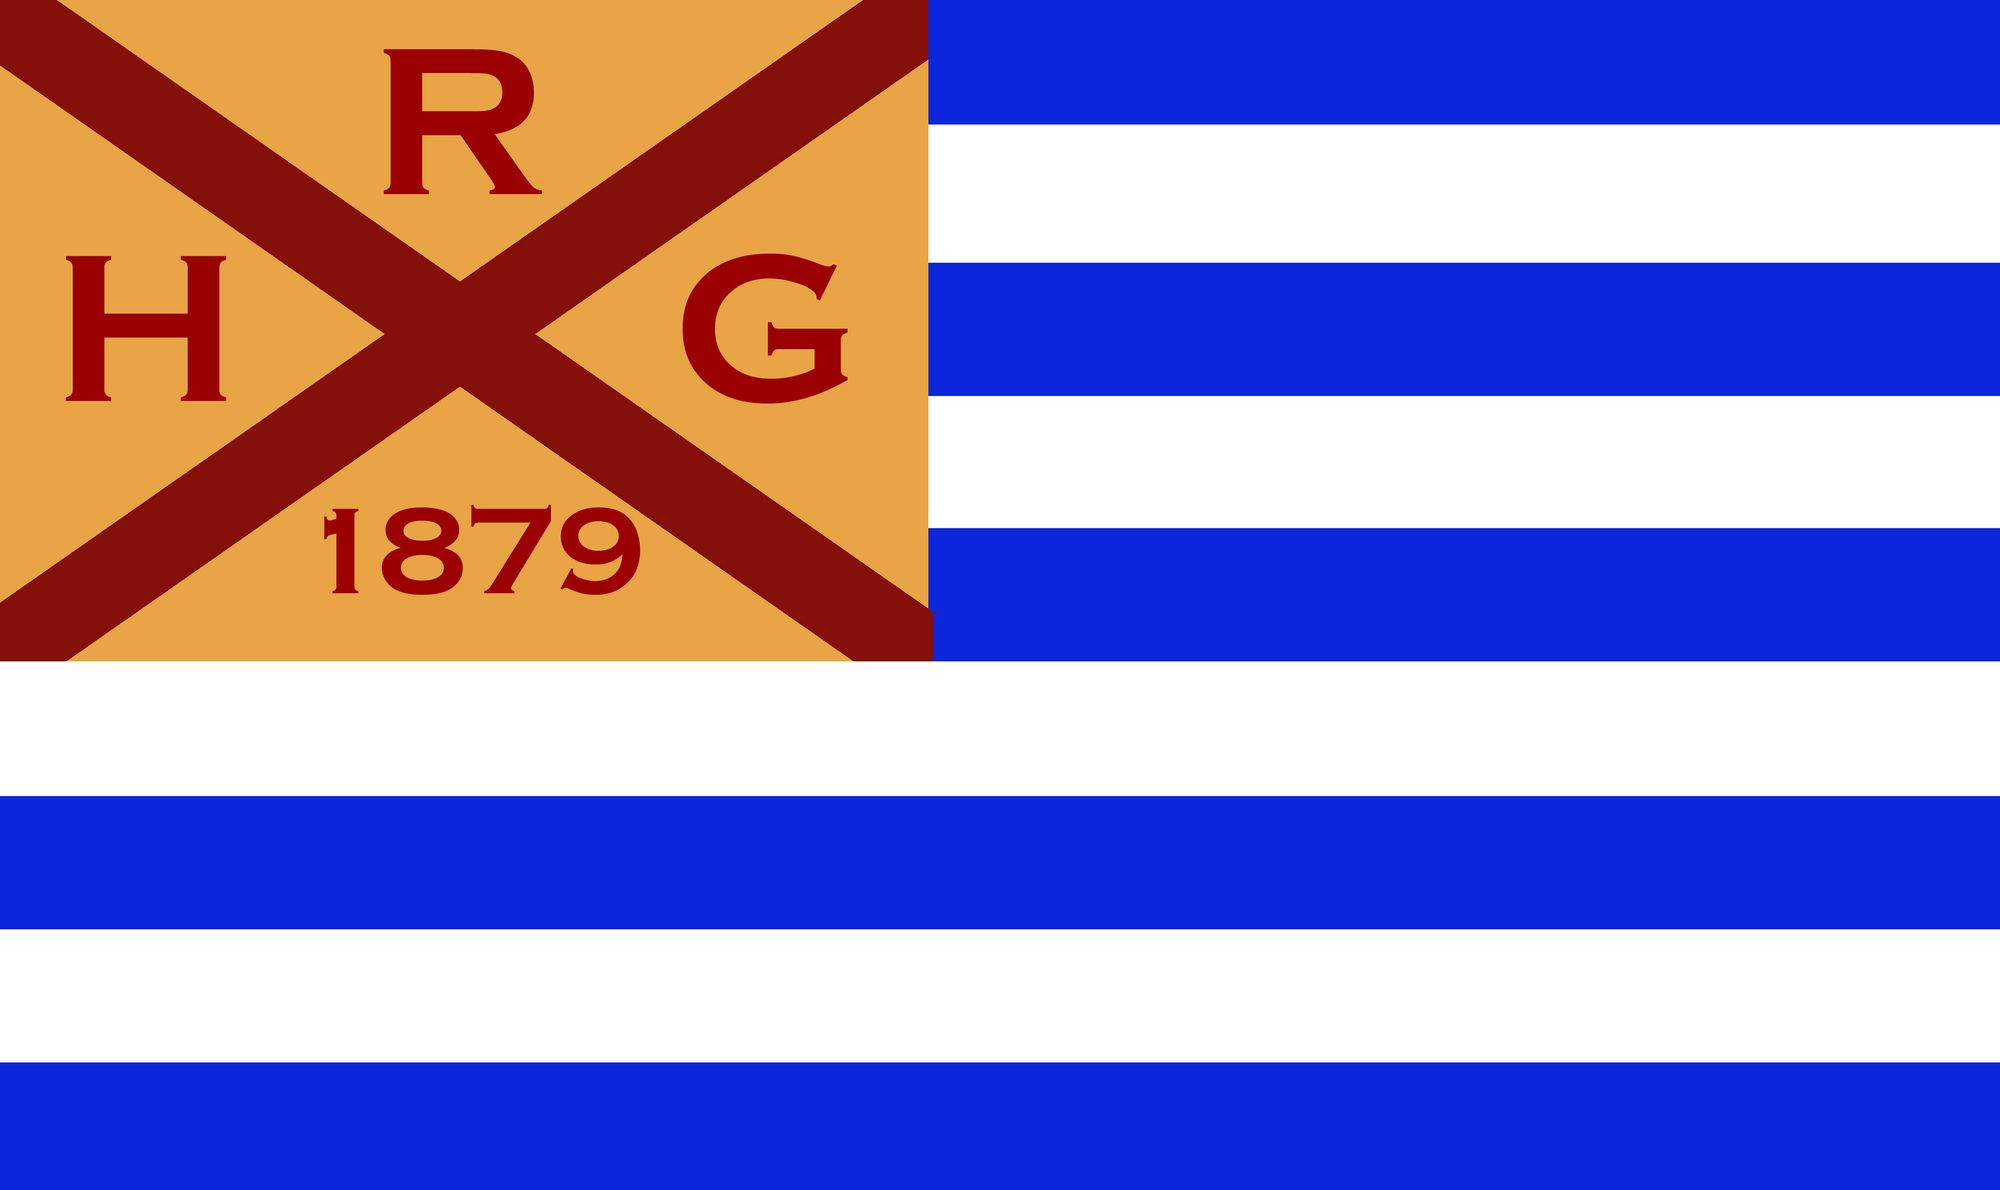 HRG 1879